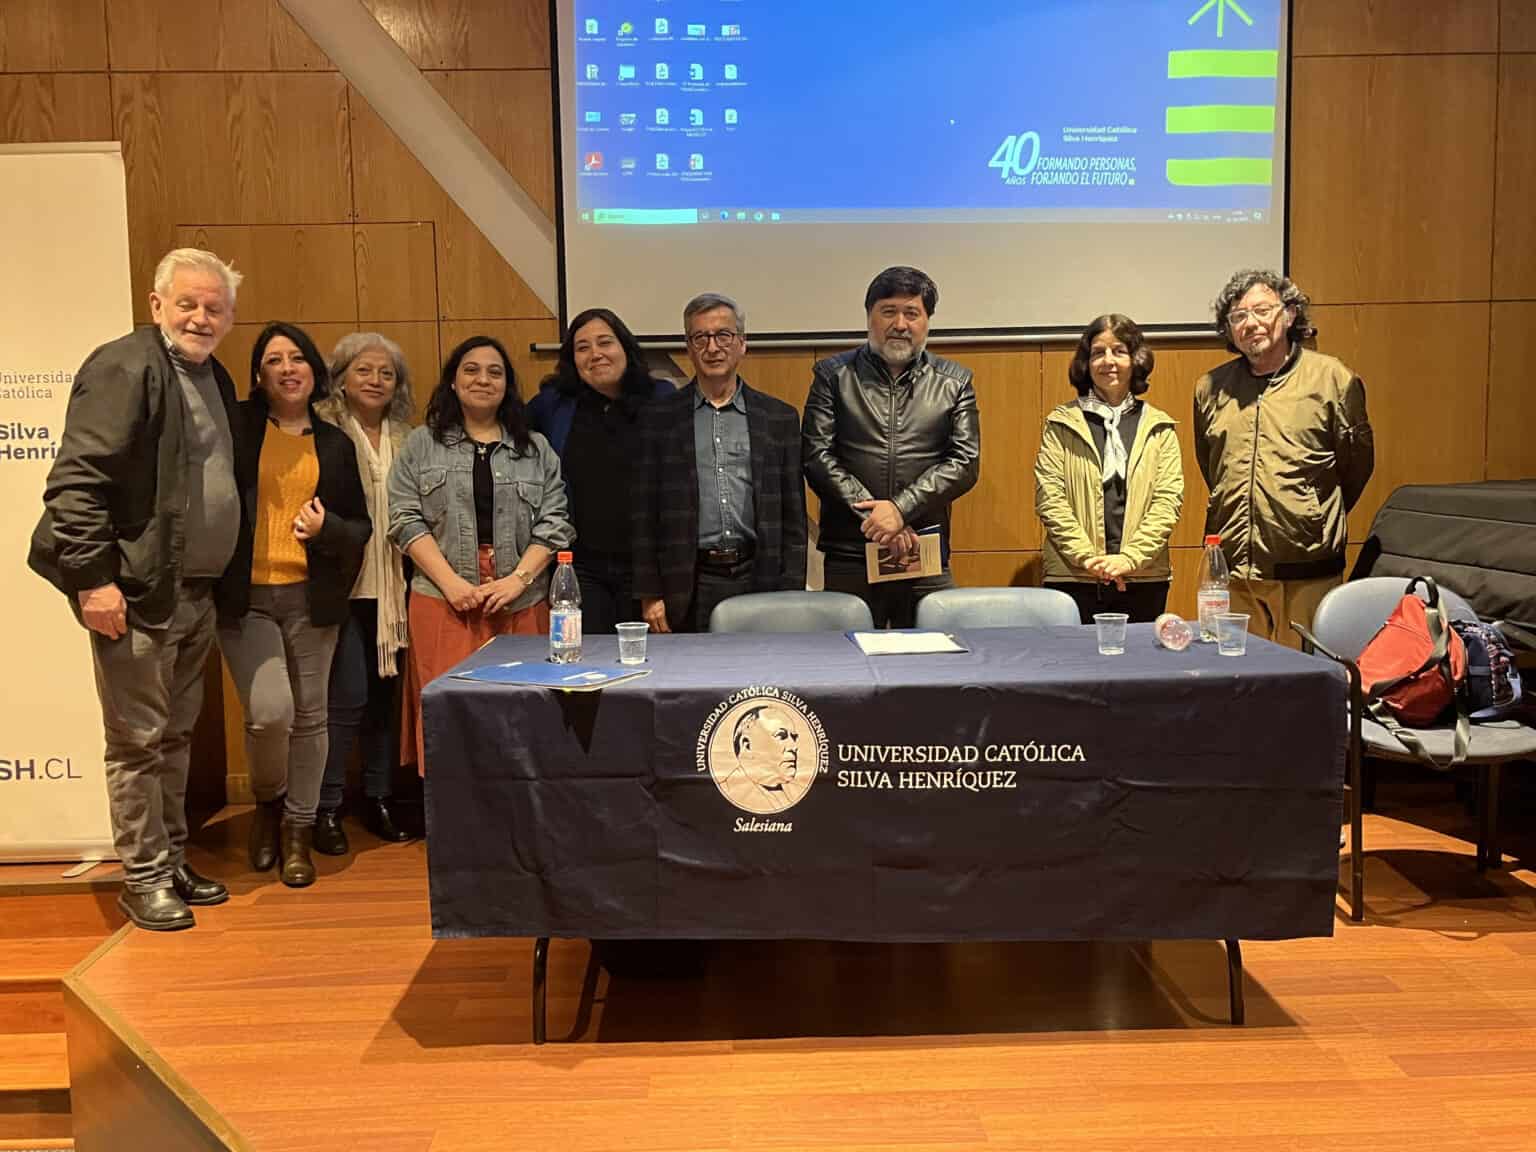 La Universidad Católica Silva Henríquez (UCSH) y la Sociedad de Escritores de Chile (SECH) cierran histórico convenio.